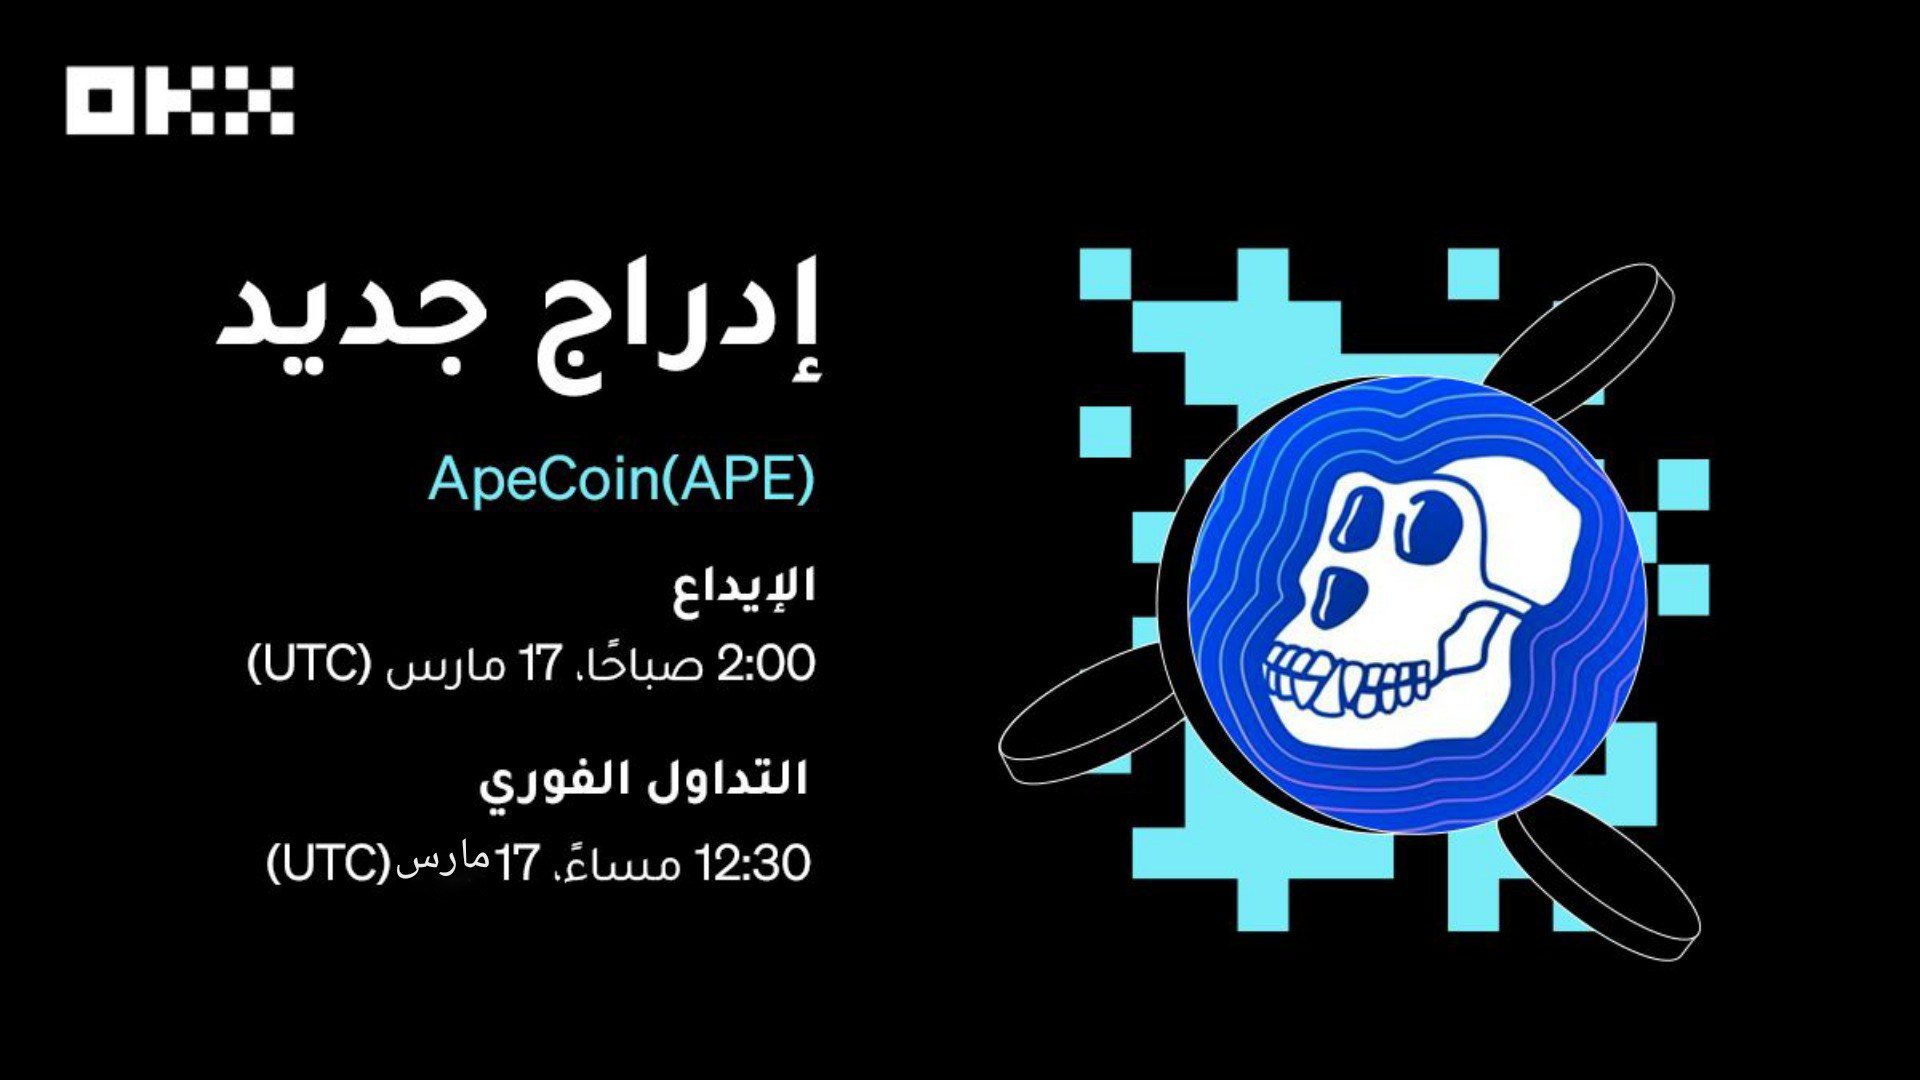 ستقوم منصة OKX بإدراج رمز APE الخاص بـ ApeCoin